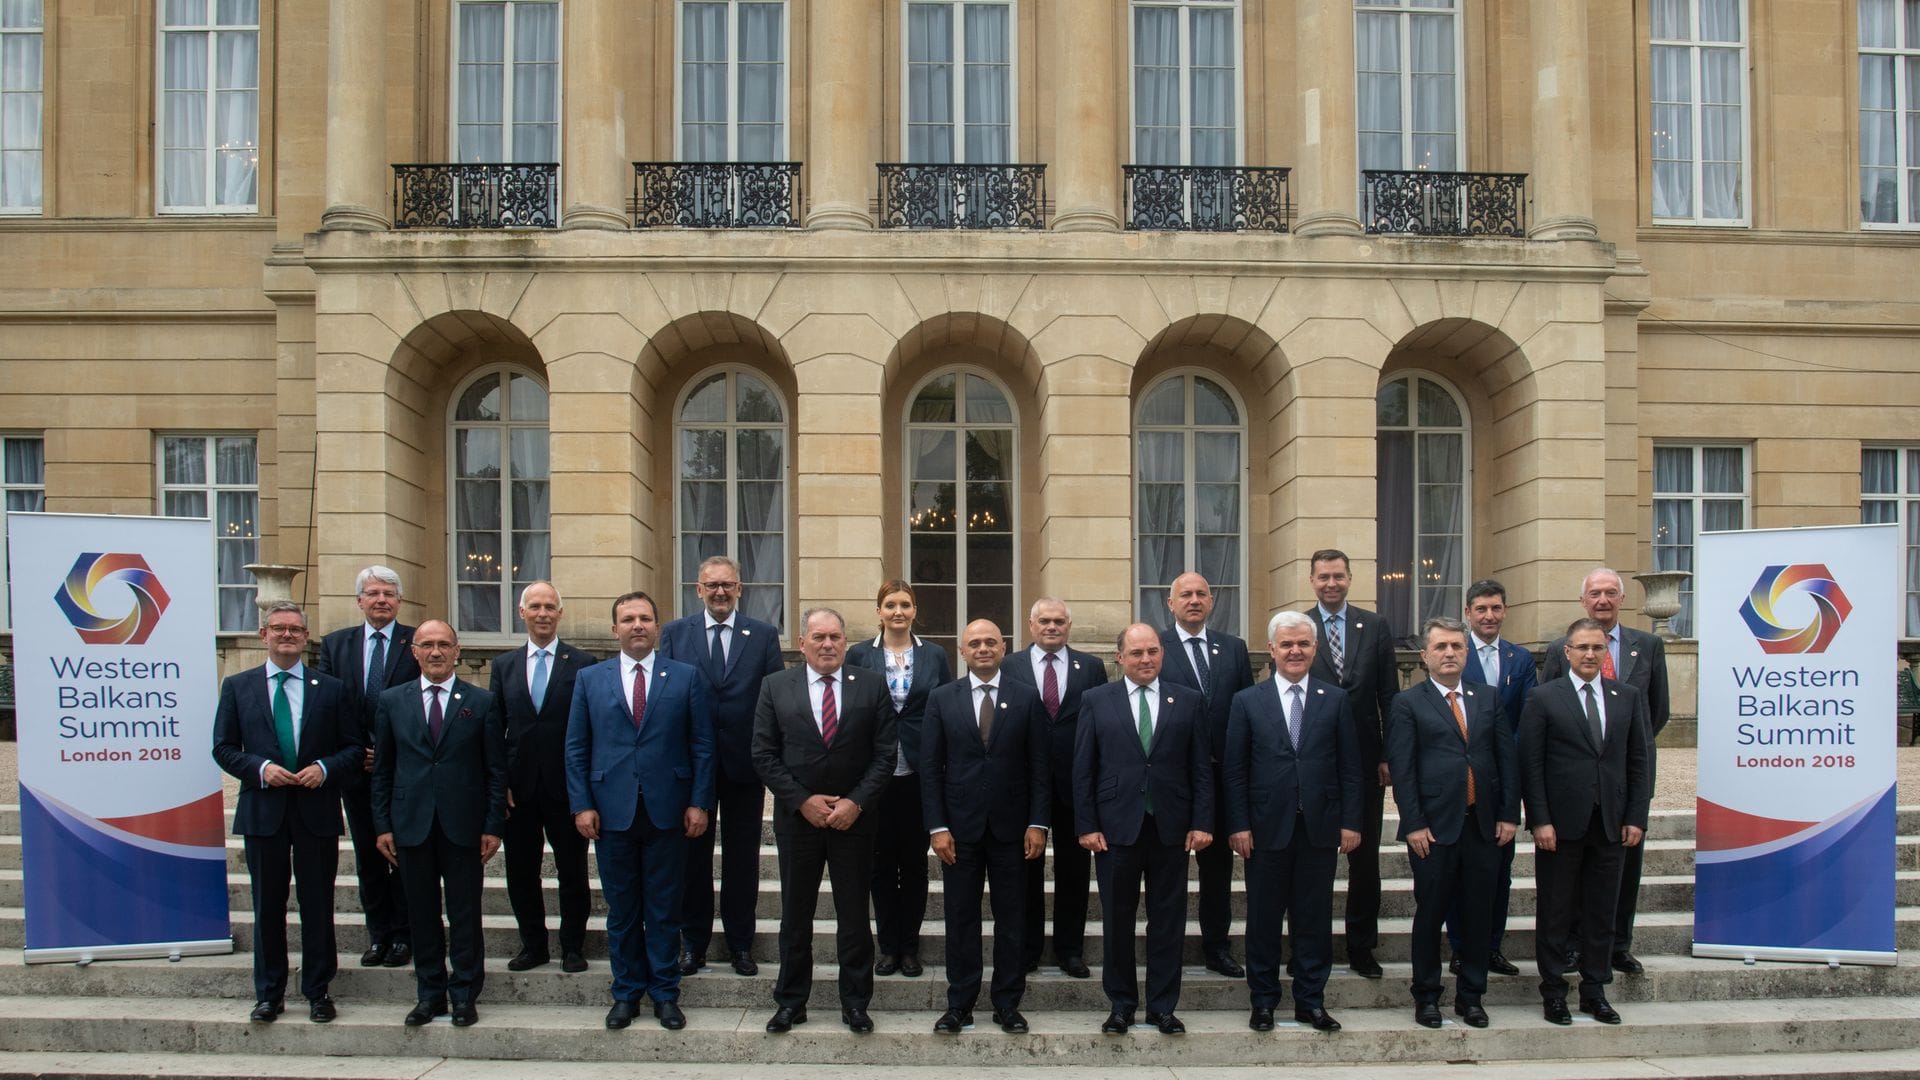 Western Balkans summit 2018